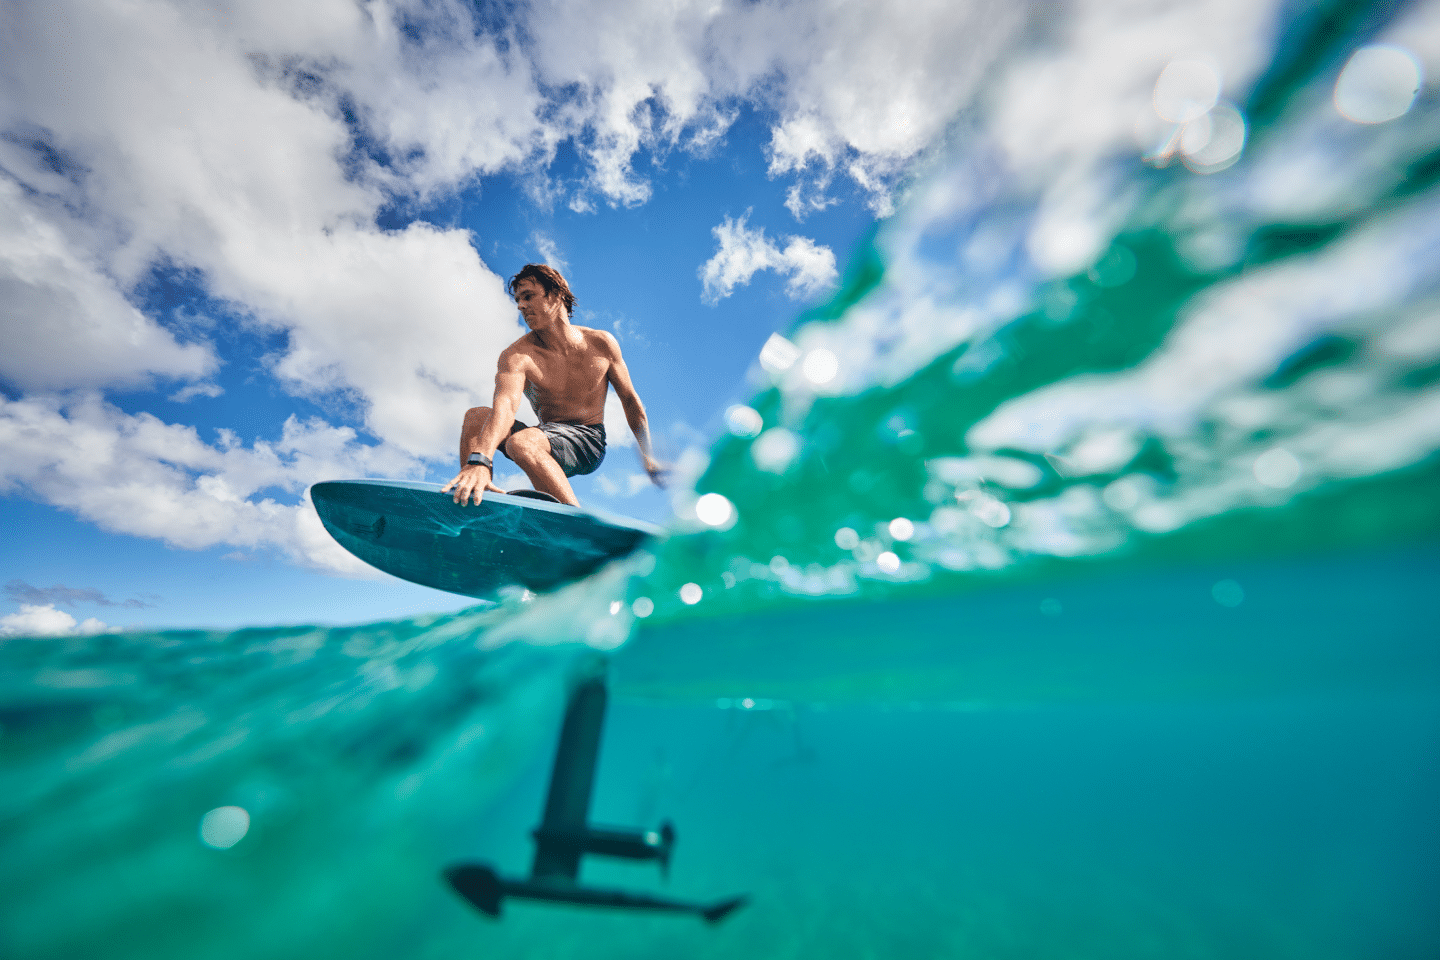 Comment se lancer en foil surf ?